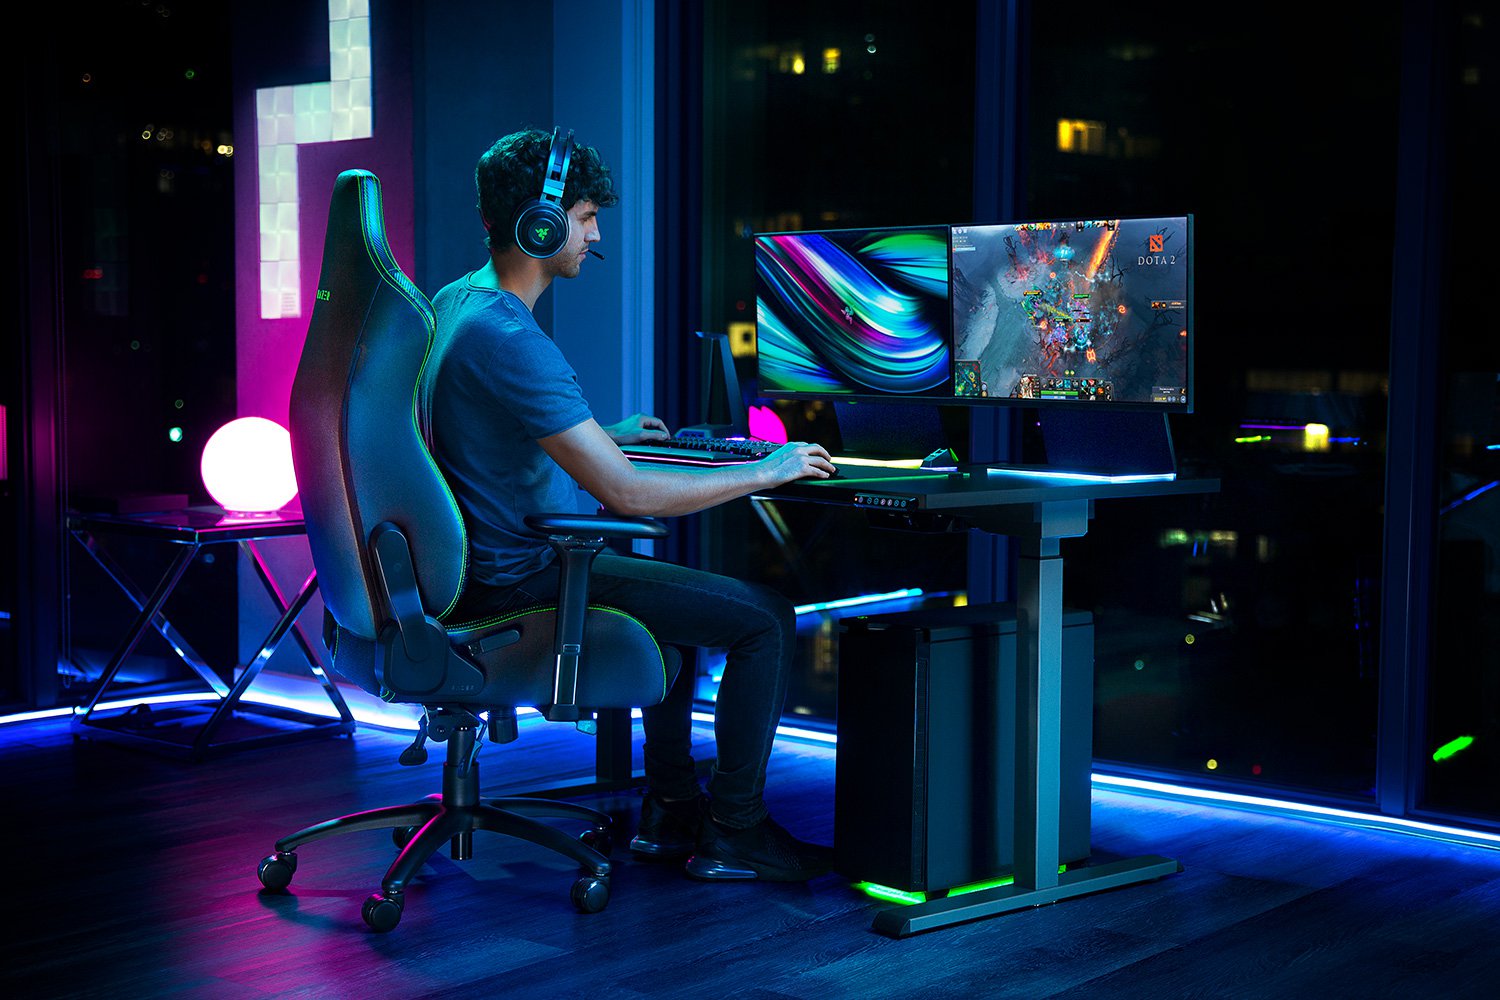 Cadeira Gamer: ergonomia e conforto para o seu home office